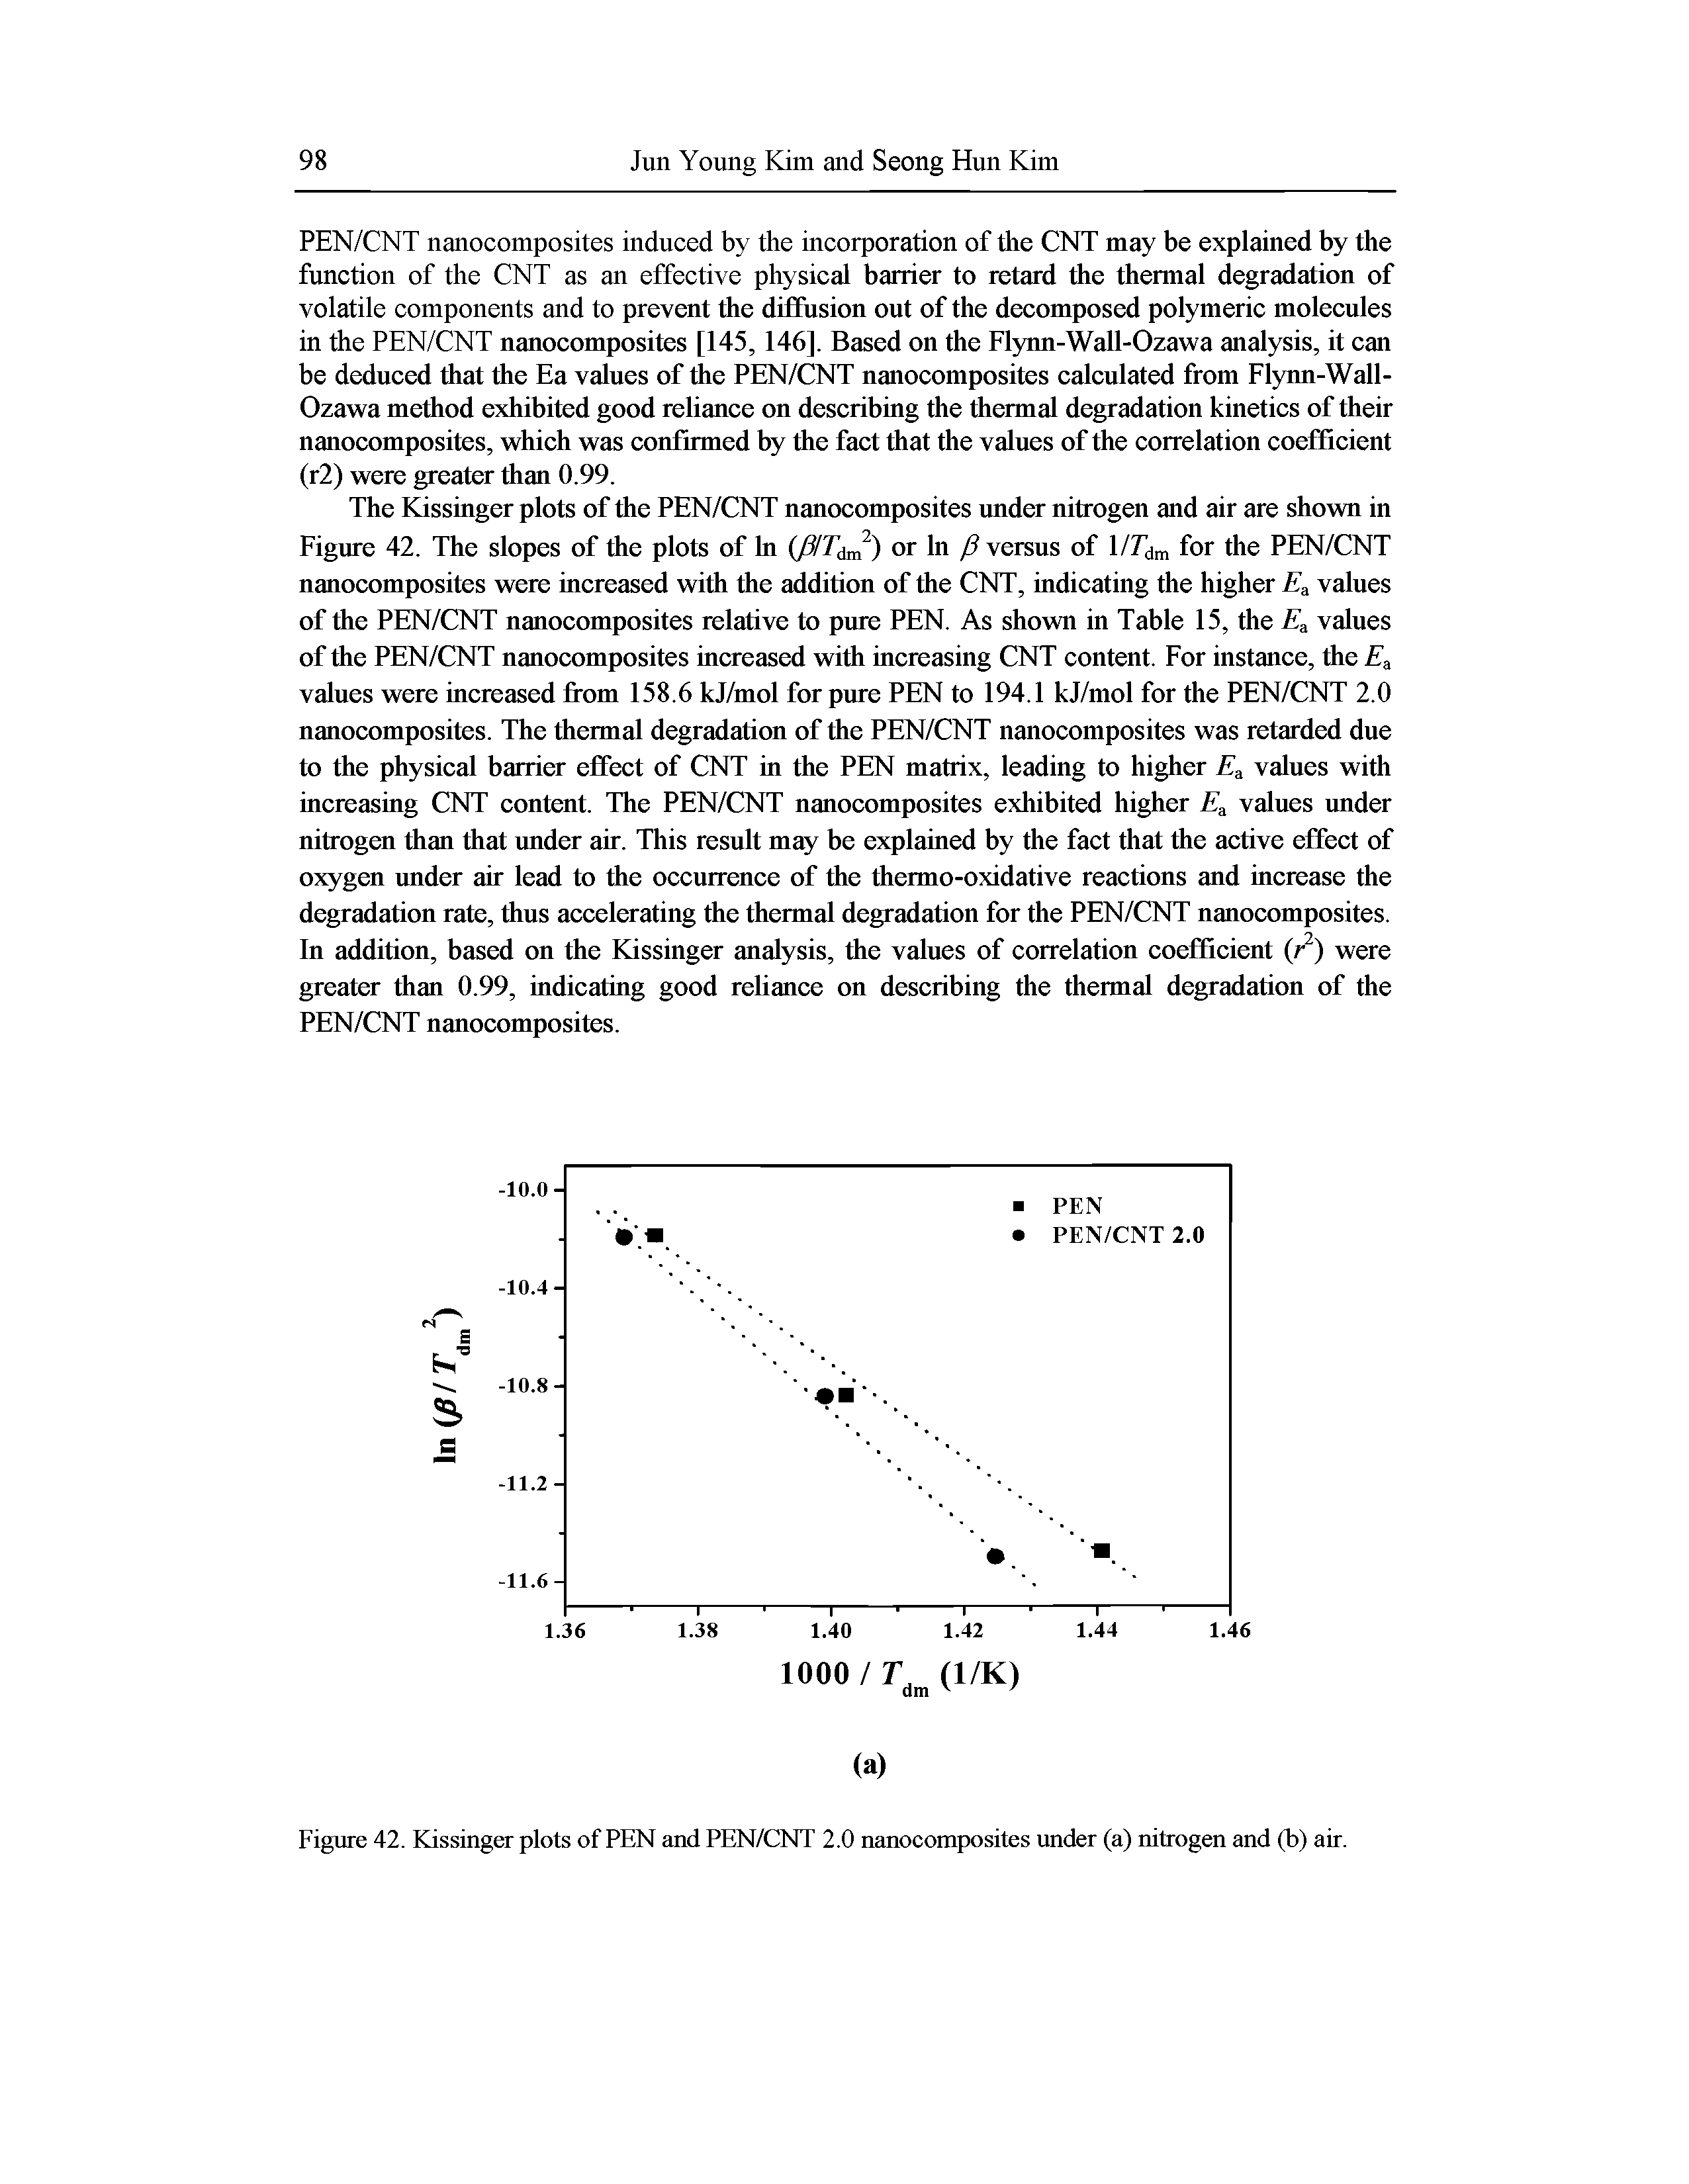 Figure 42. Kissinger plots of PEN and PEN/CNT 2.0 nanocomposites under (a) nitrogen and (b) air.